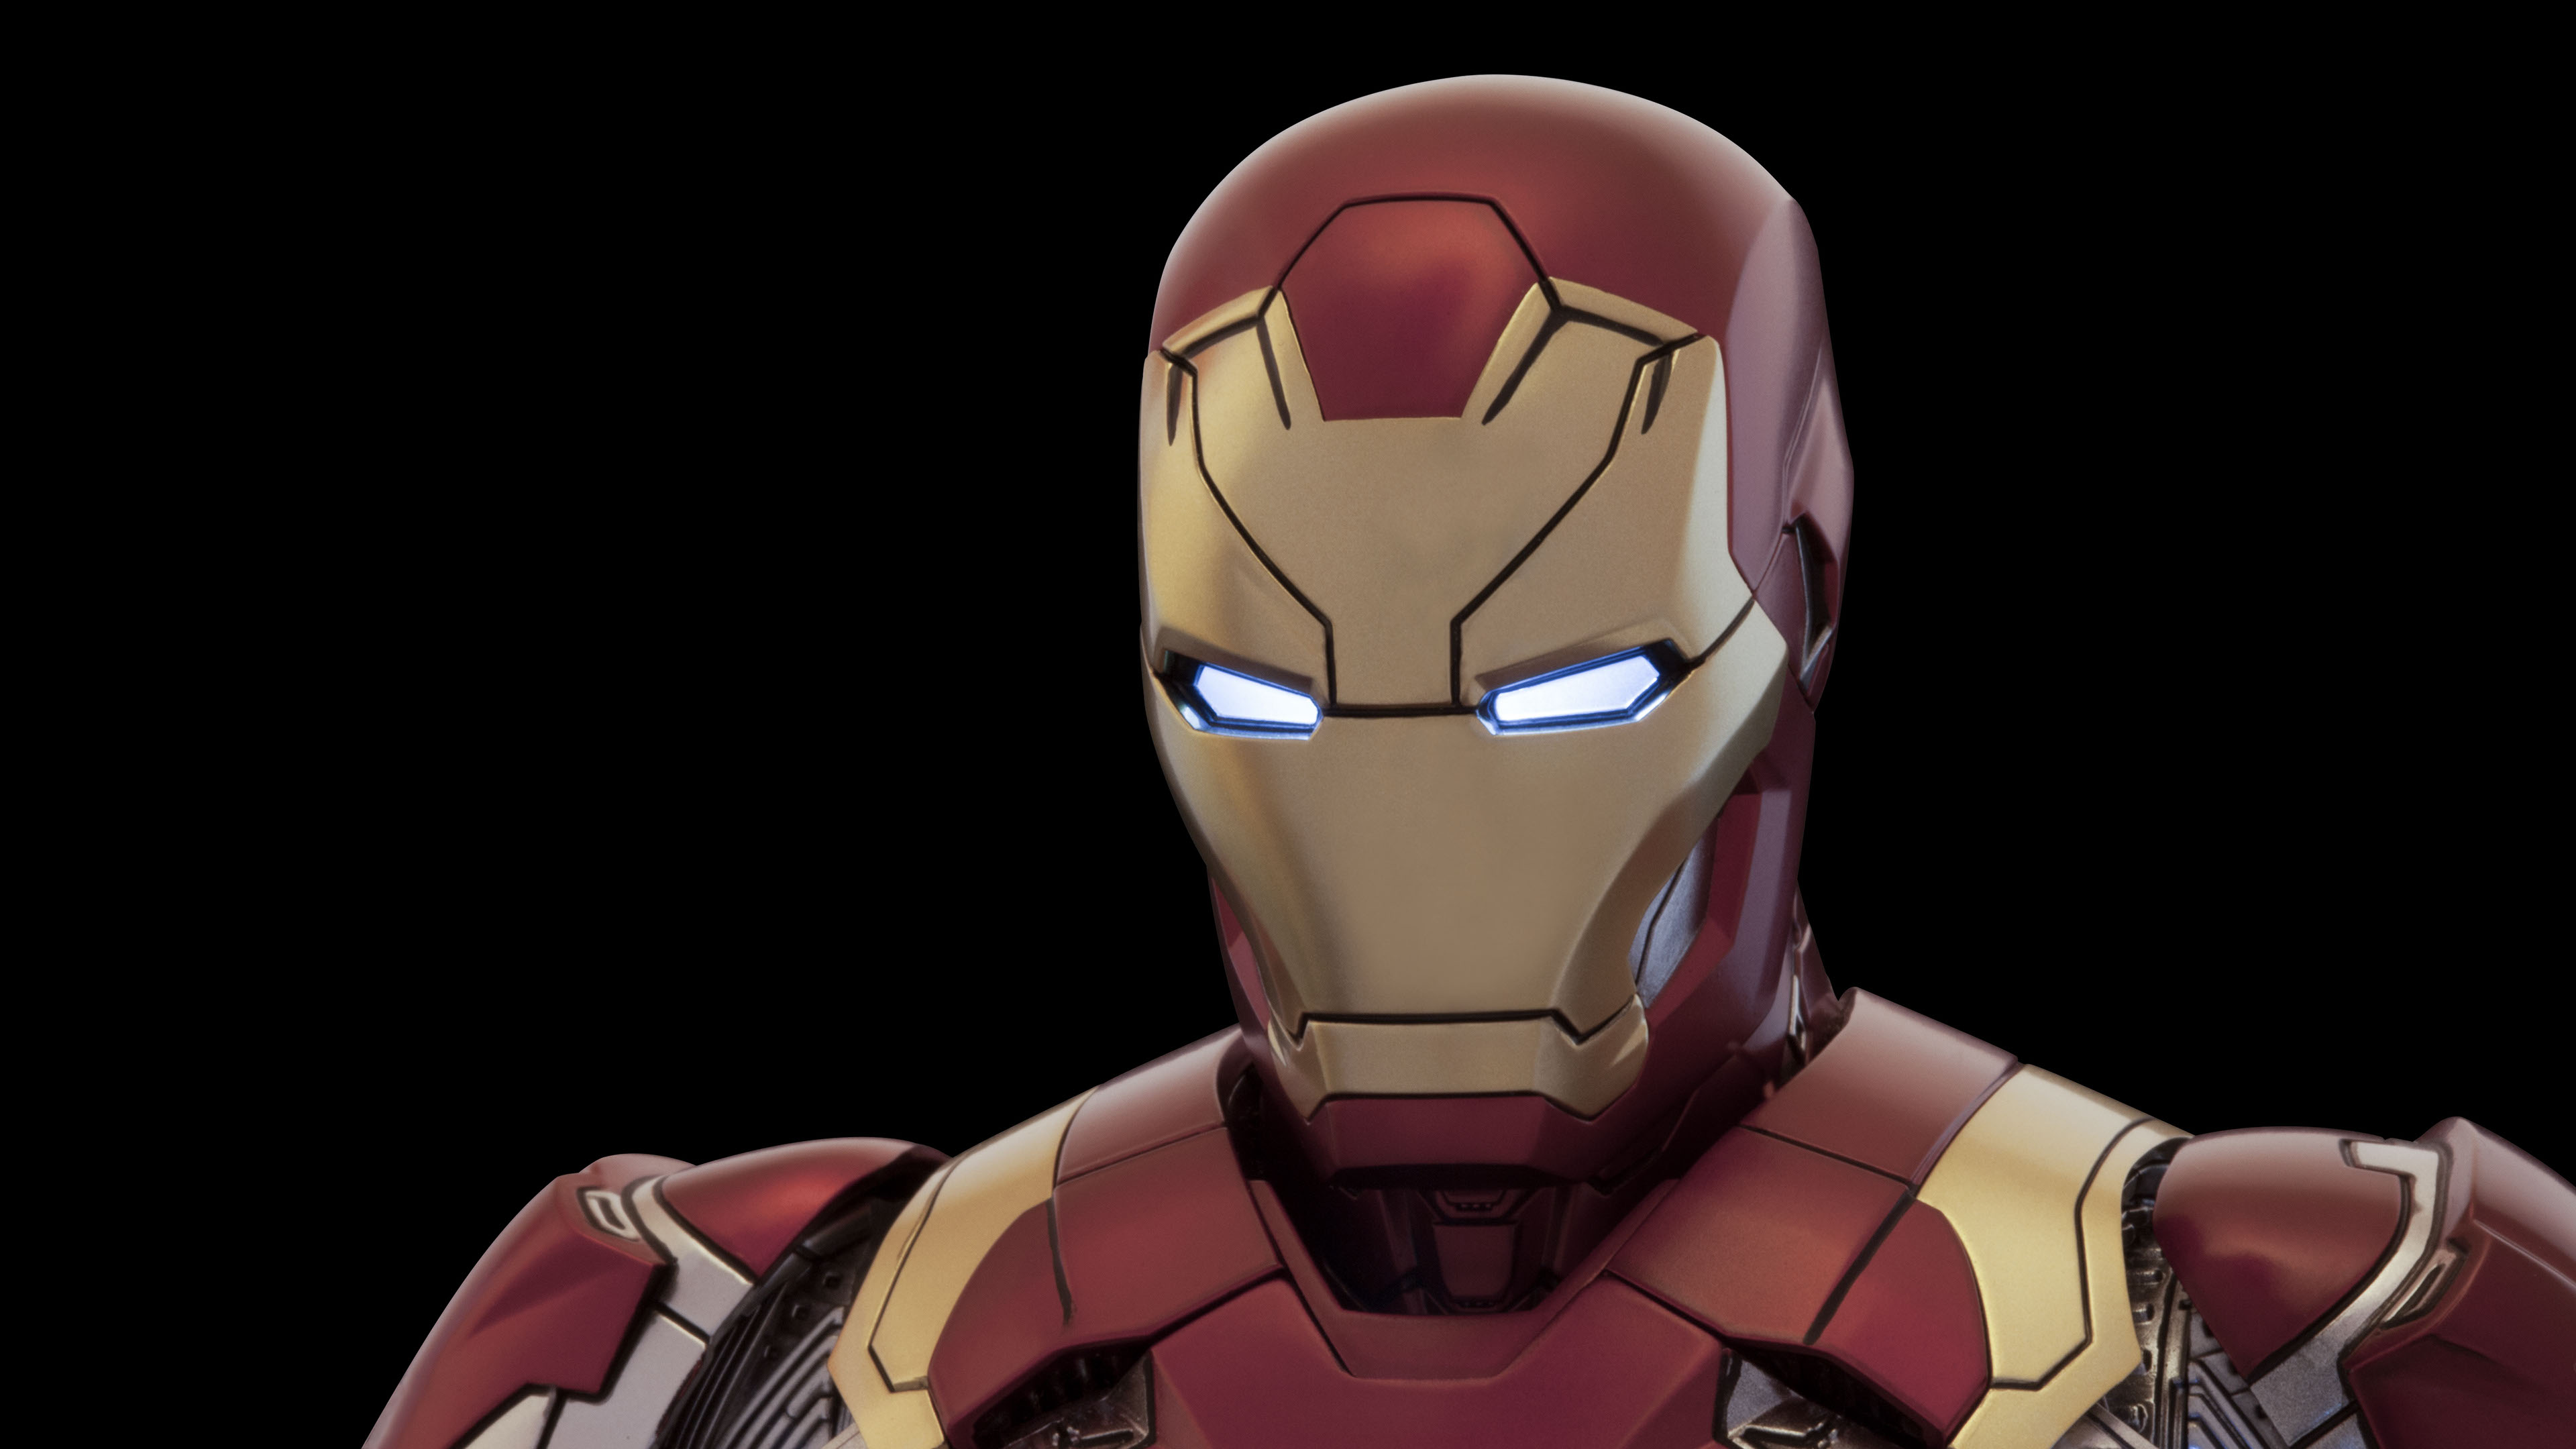 Hd Iron Man 3d - 3840x2160 Wallpaper 